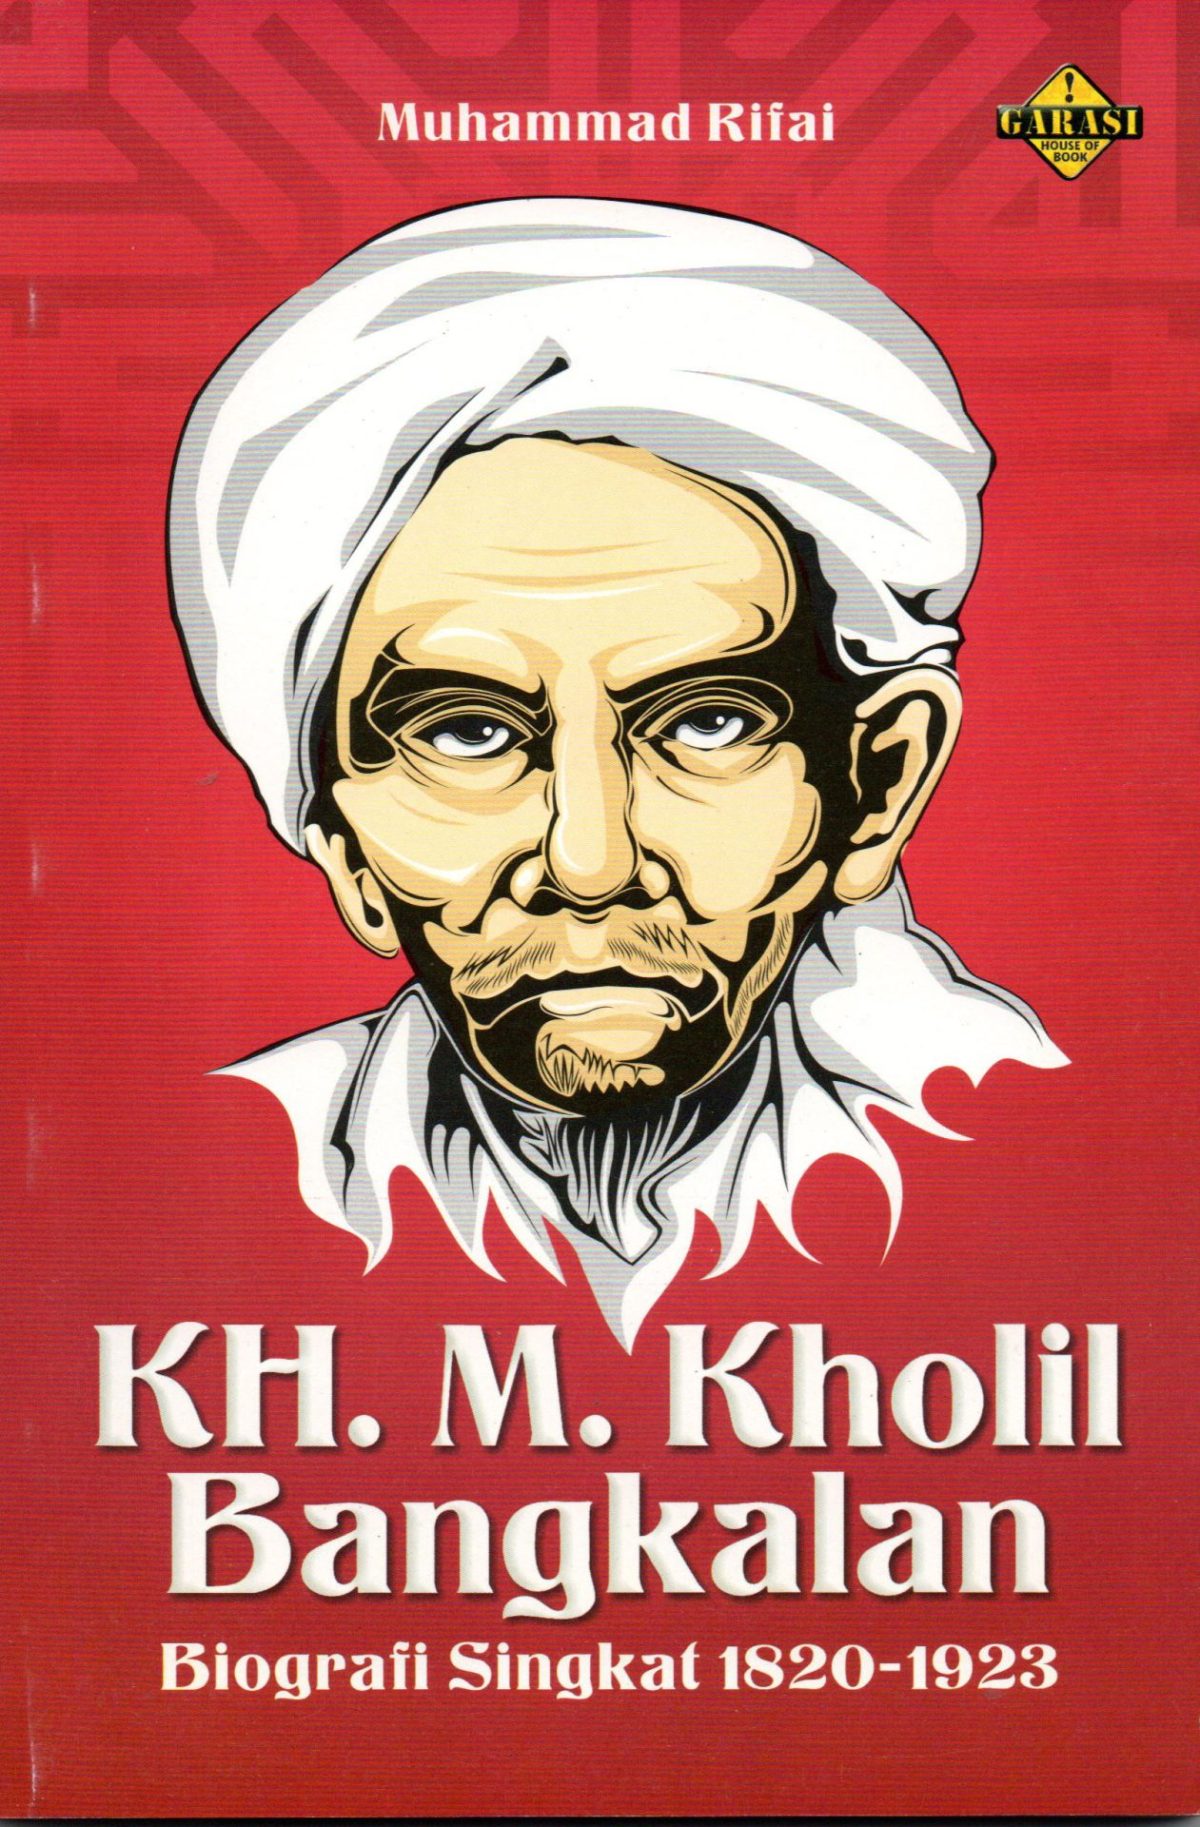 KH. M. Kholil Bangkalan